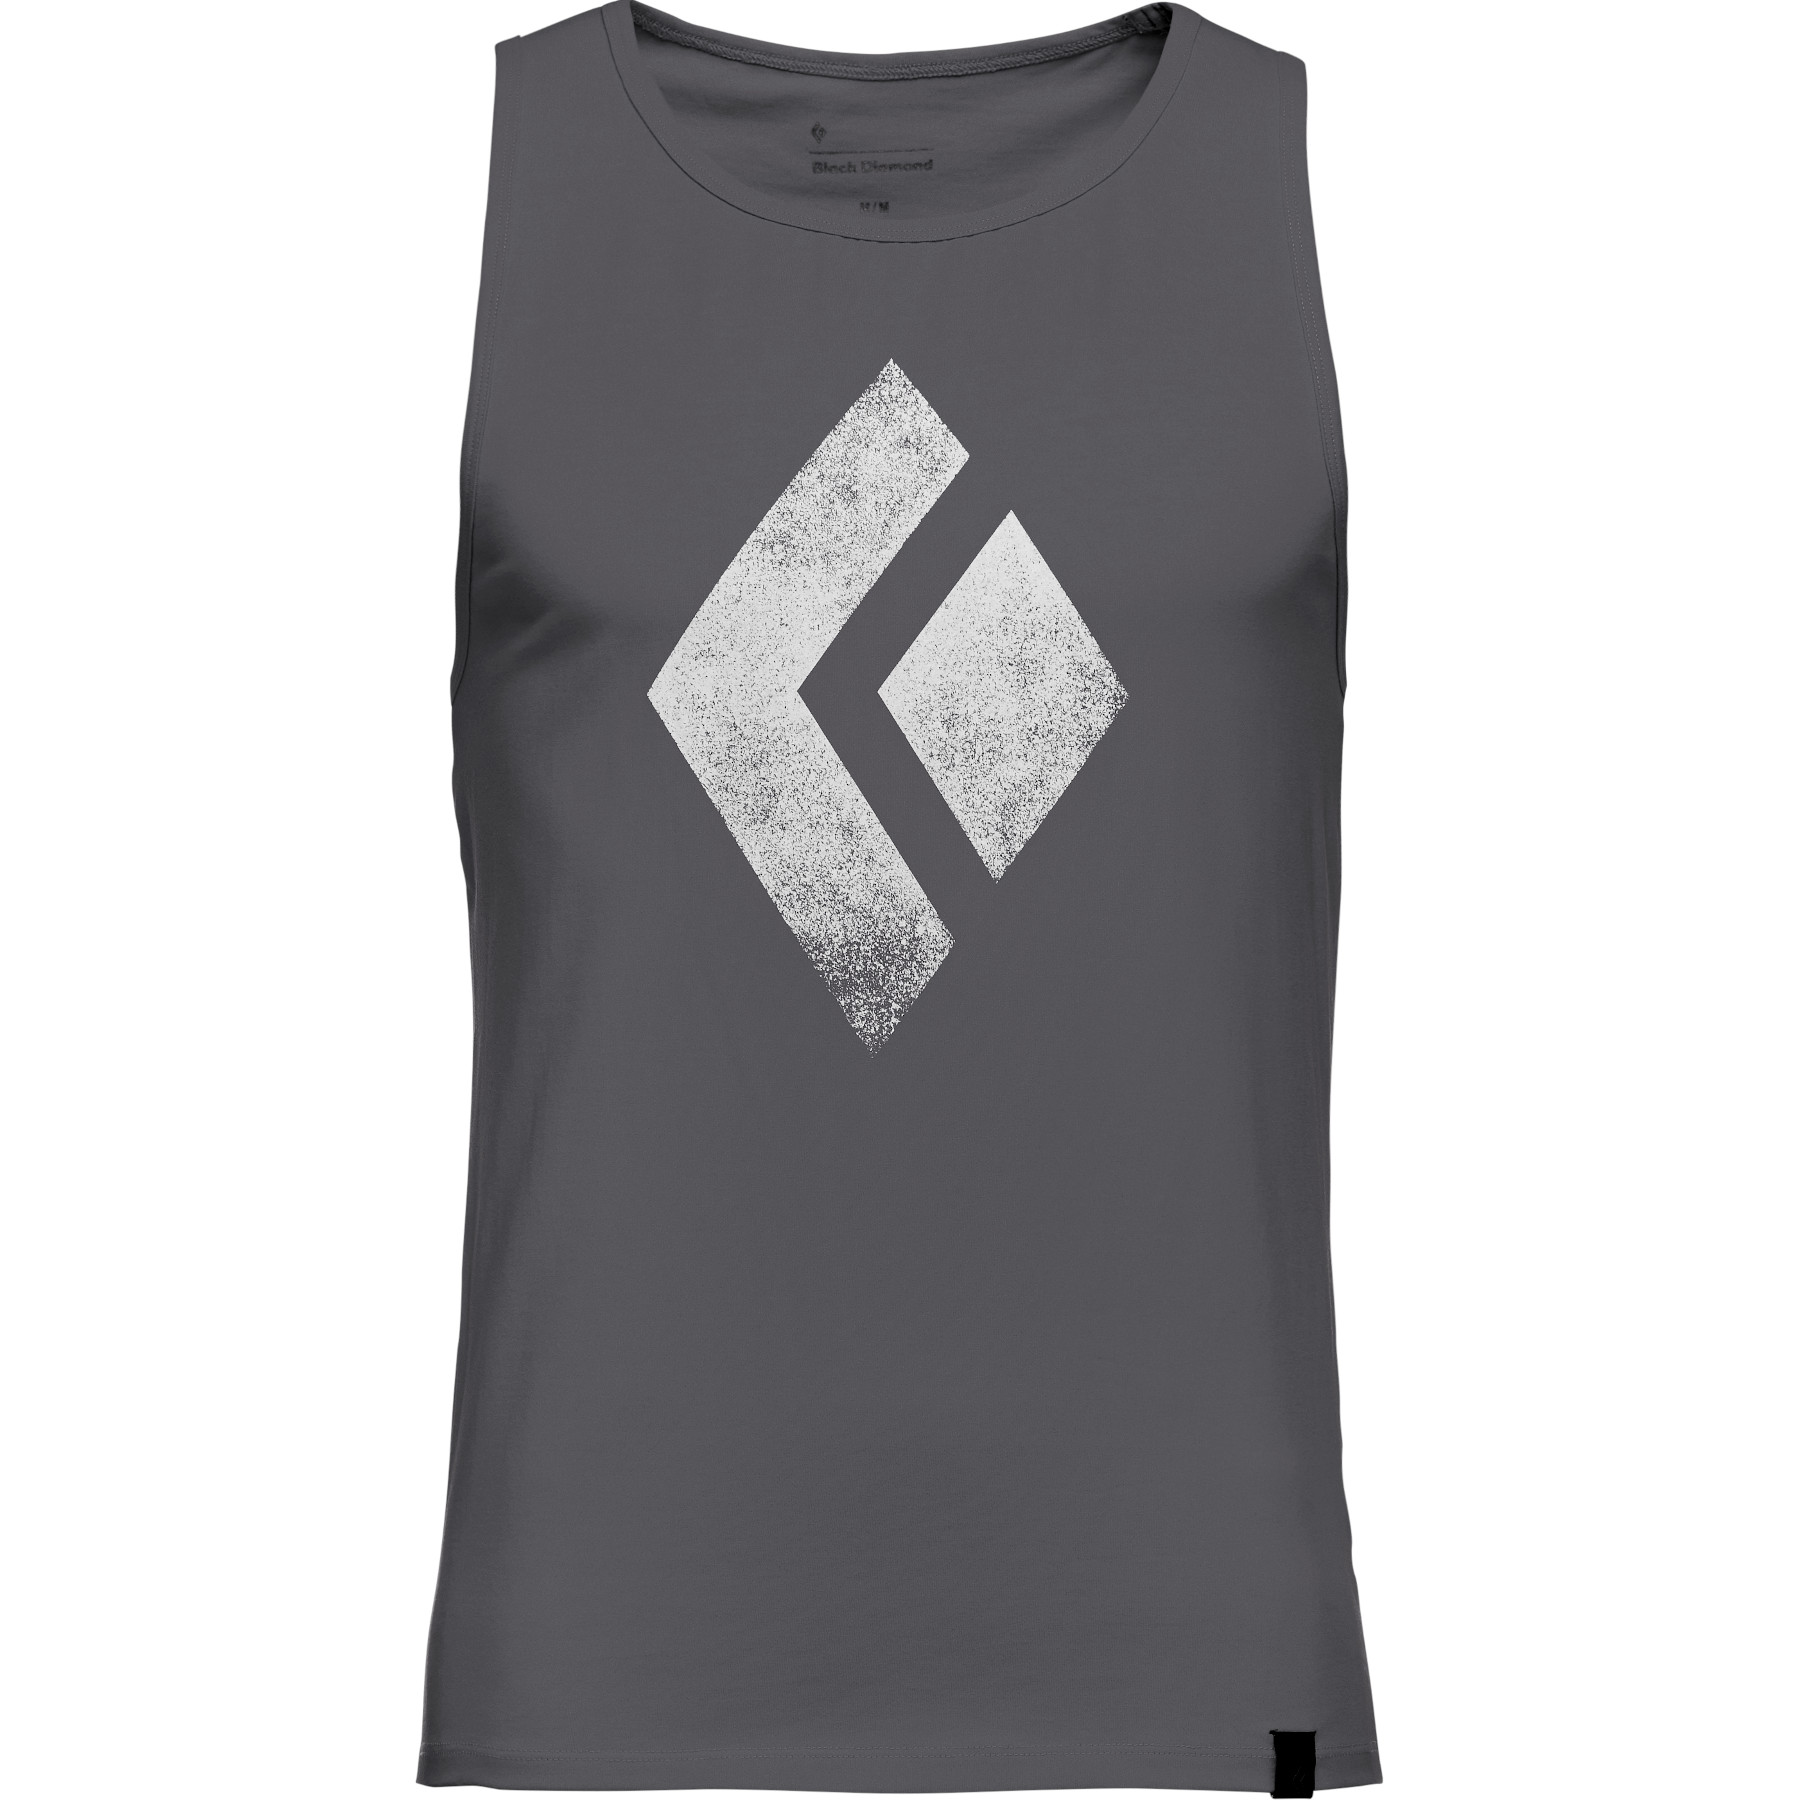 Produktbild von Black Diamond Chalked Up Tank Shirt - Carbon